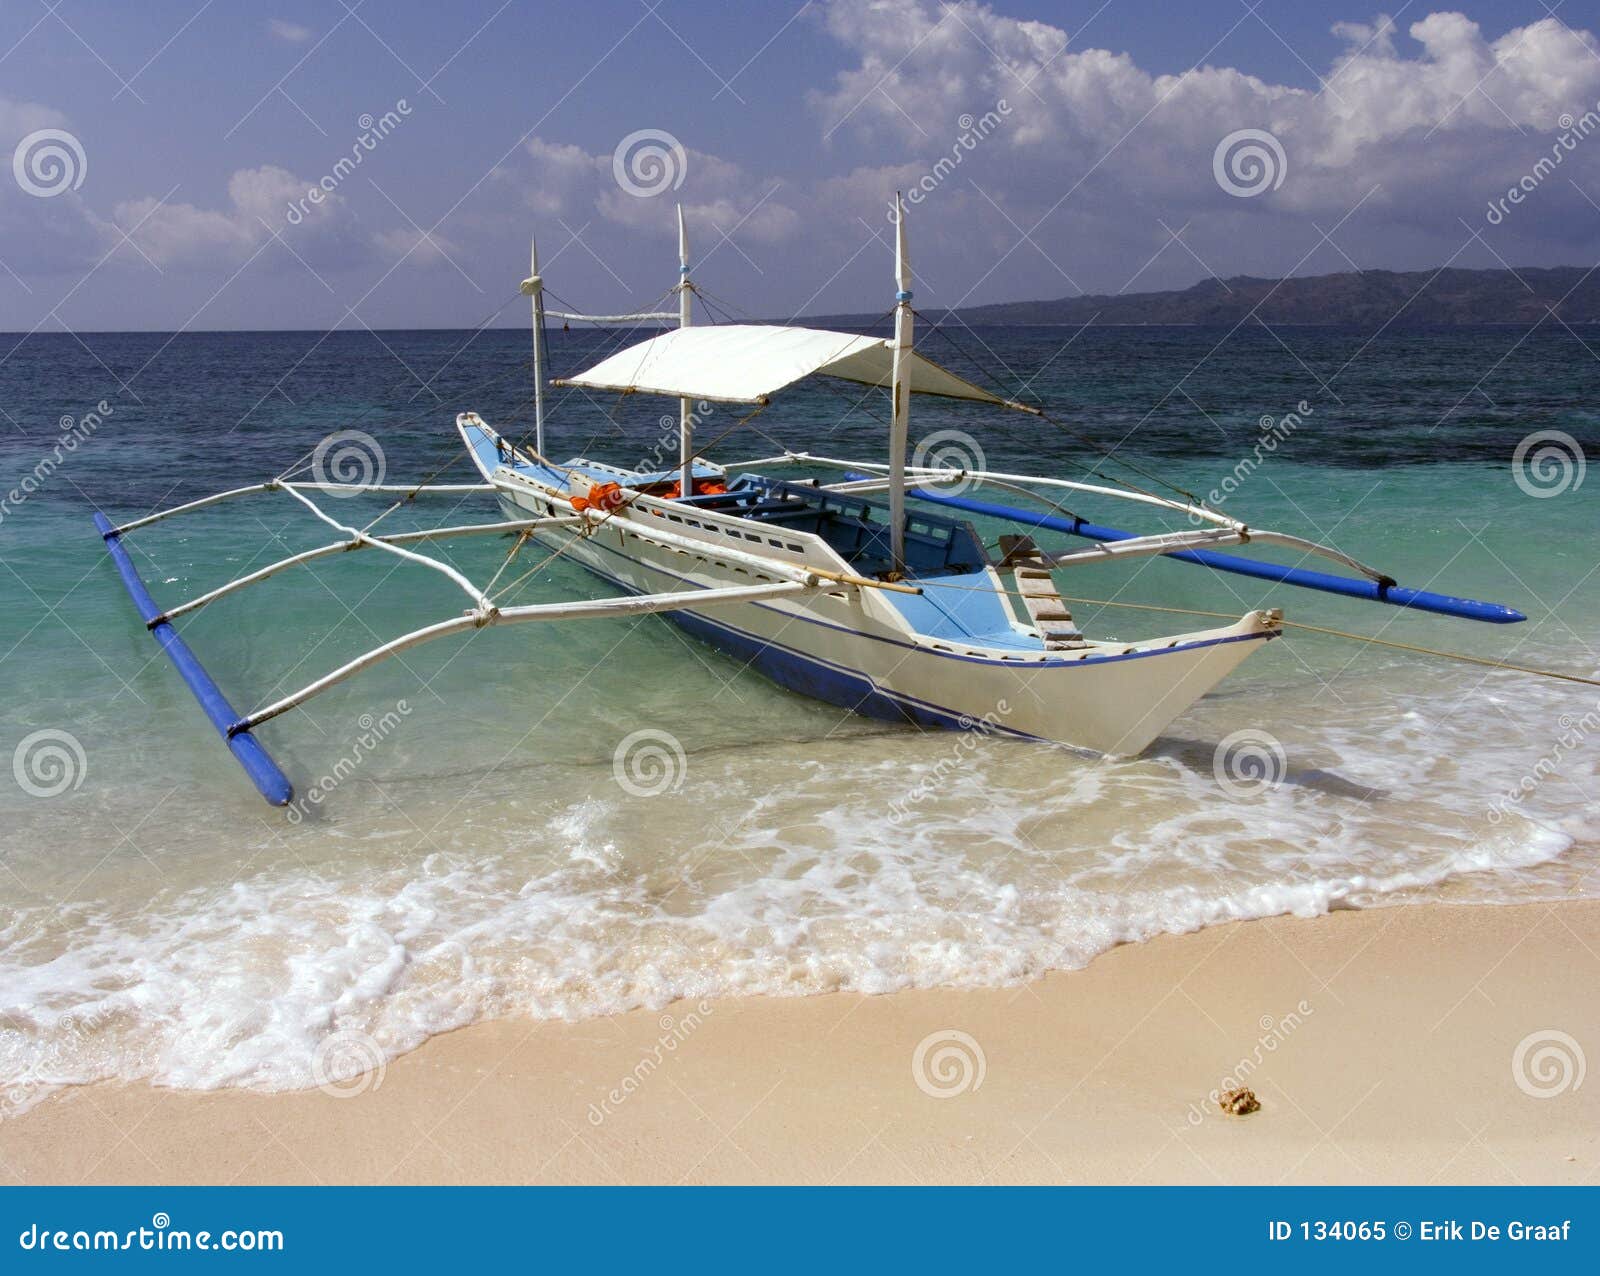 Philippine Fishing Boat 2 Royalty Free Stock Photo - Image: 134065